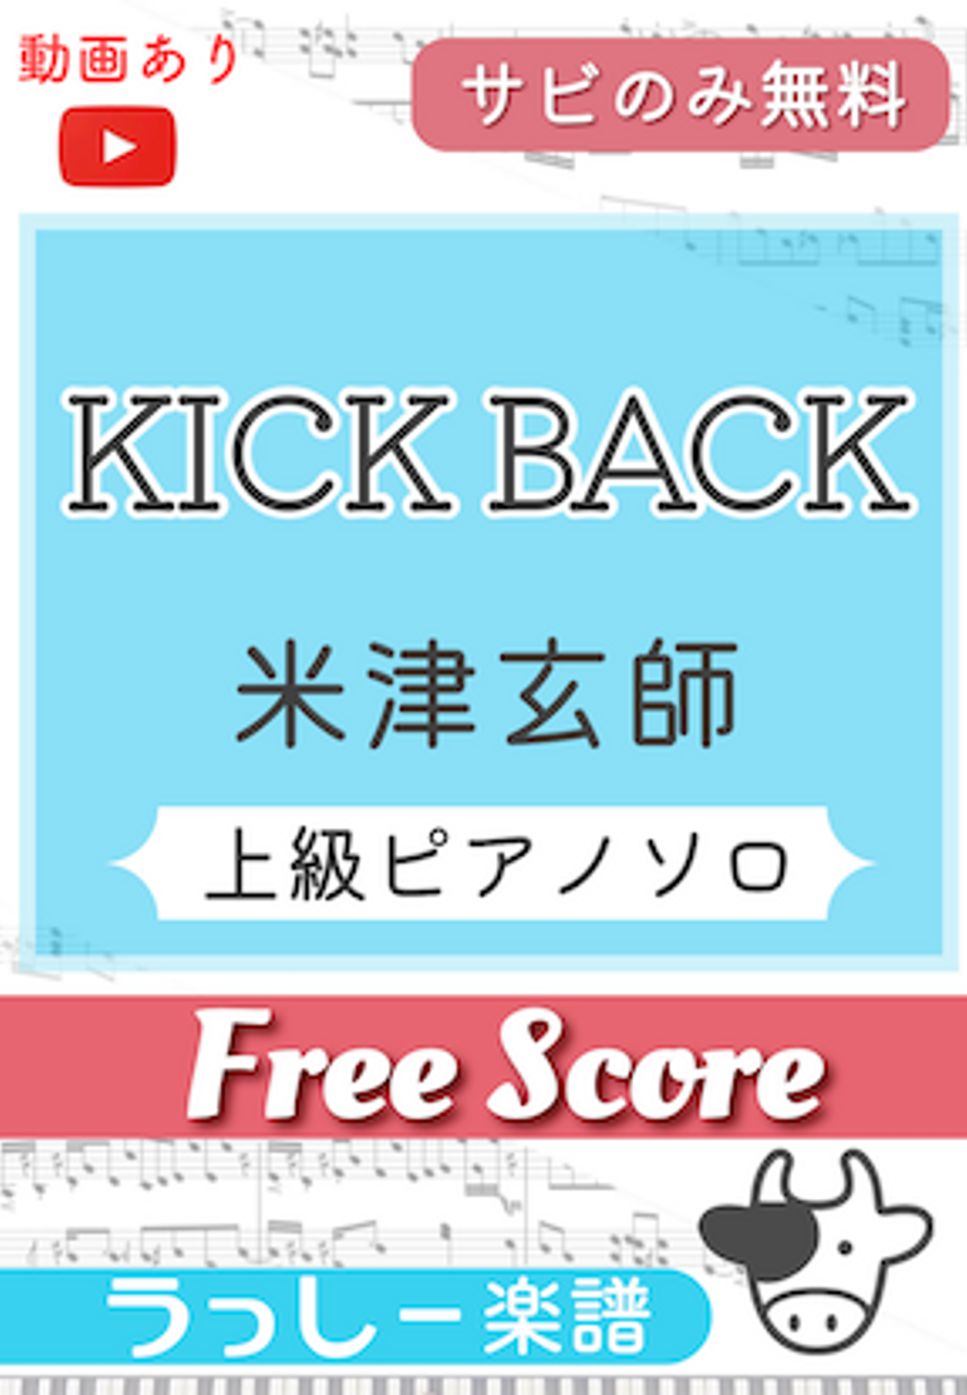 米津玄師 - KICK BACK (サビのみ無料) by 牛武奏人